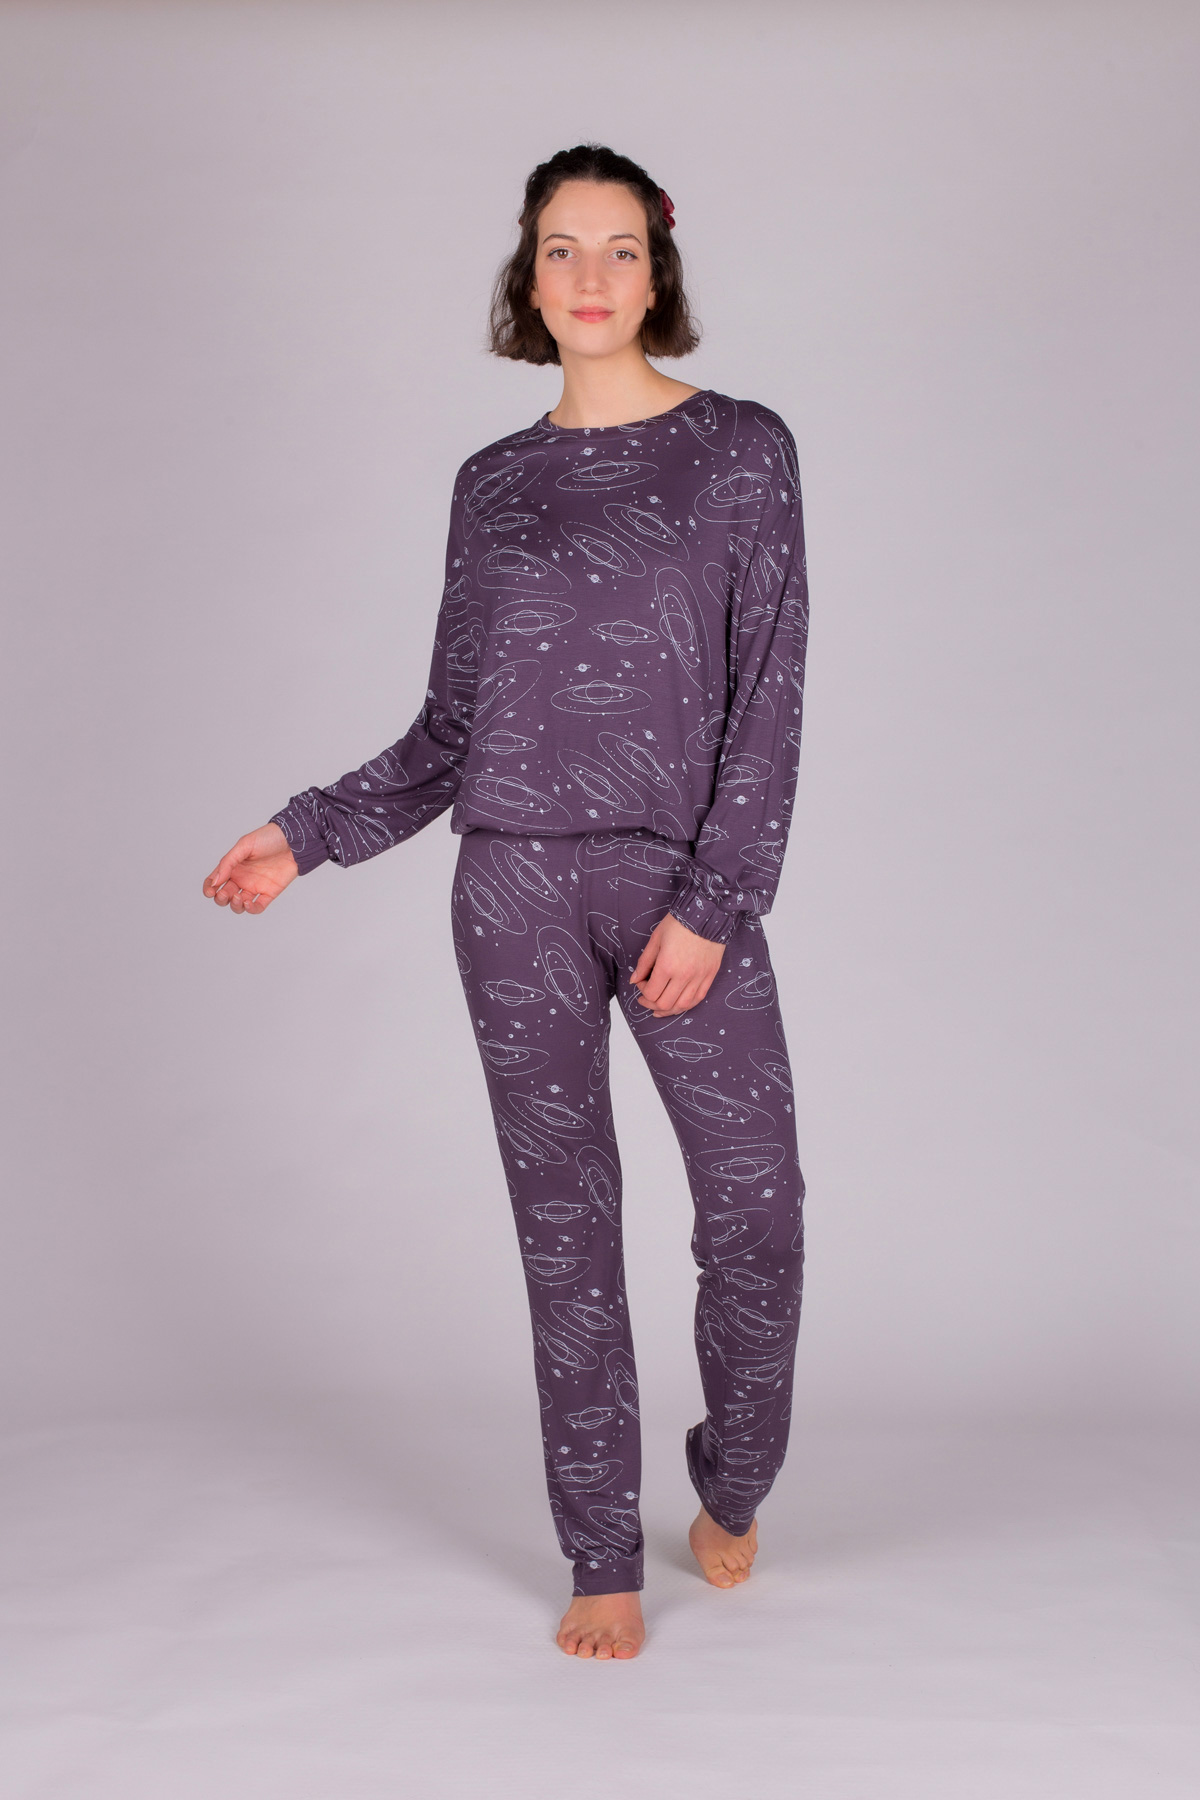 Kadın Galaksi Desenli Pijama Takımı